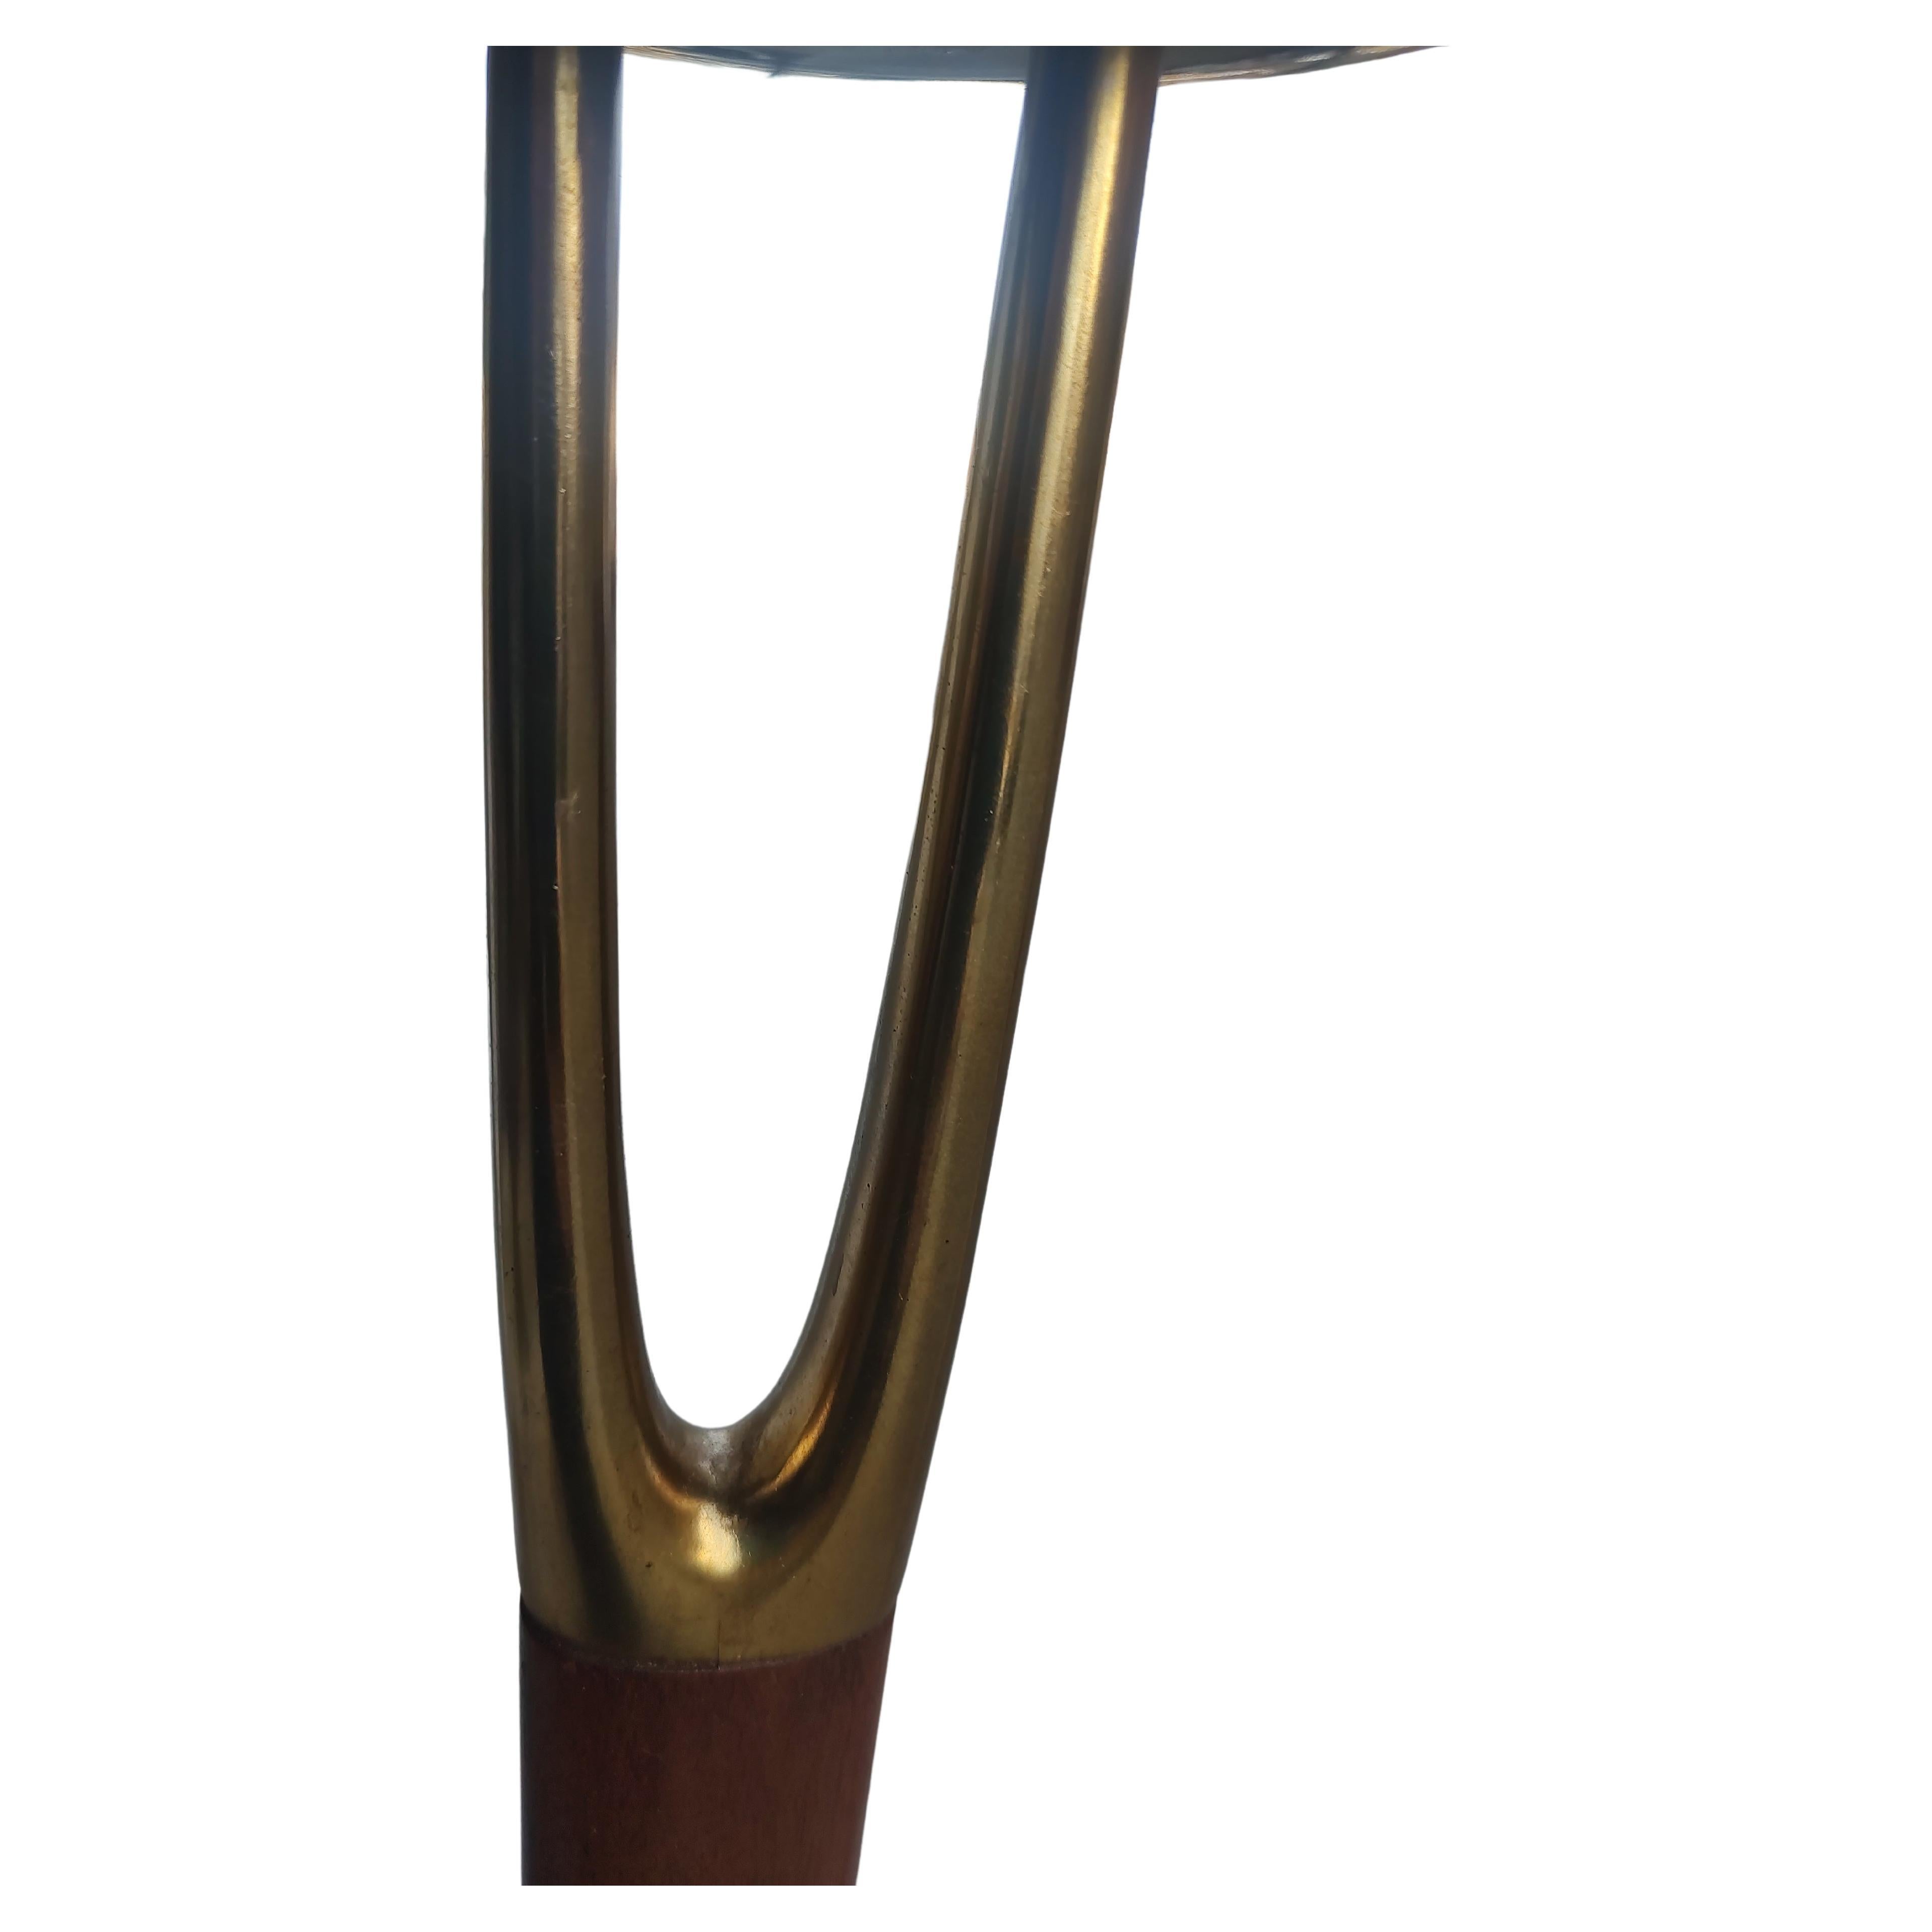 Fabelhaftes Paar Wishbone-Stehlampen von Gerald Thurston für die Laurel Lamp Co. C1960. Schöne Paar Stehlampen mit original Glasschirme völlig intakt. 65,75 Höhe mit einem 20 Zoll Durchmesser und einem quadratischen Sockel 10 x 10. Sehr elegant mit